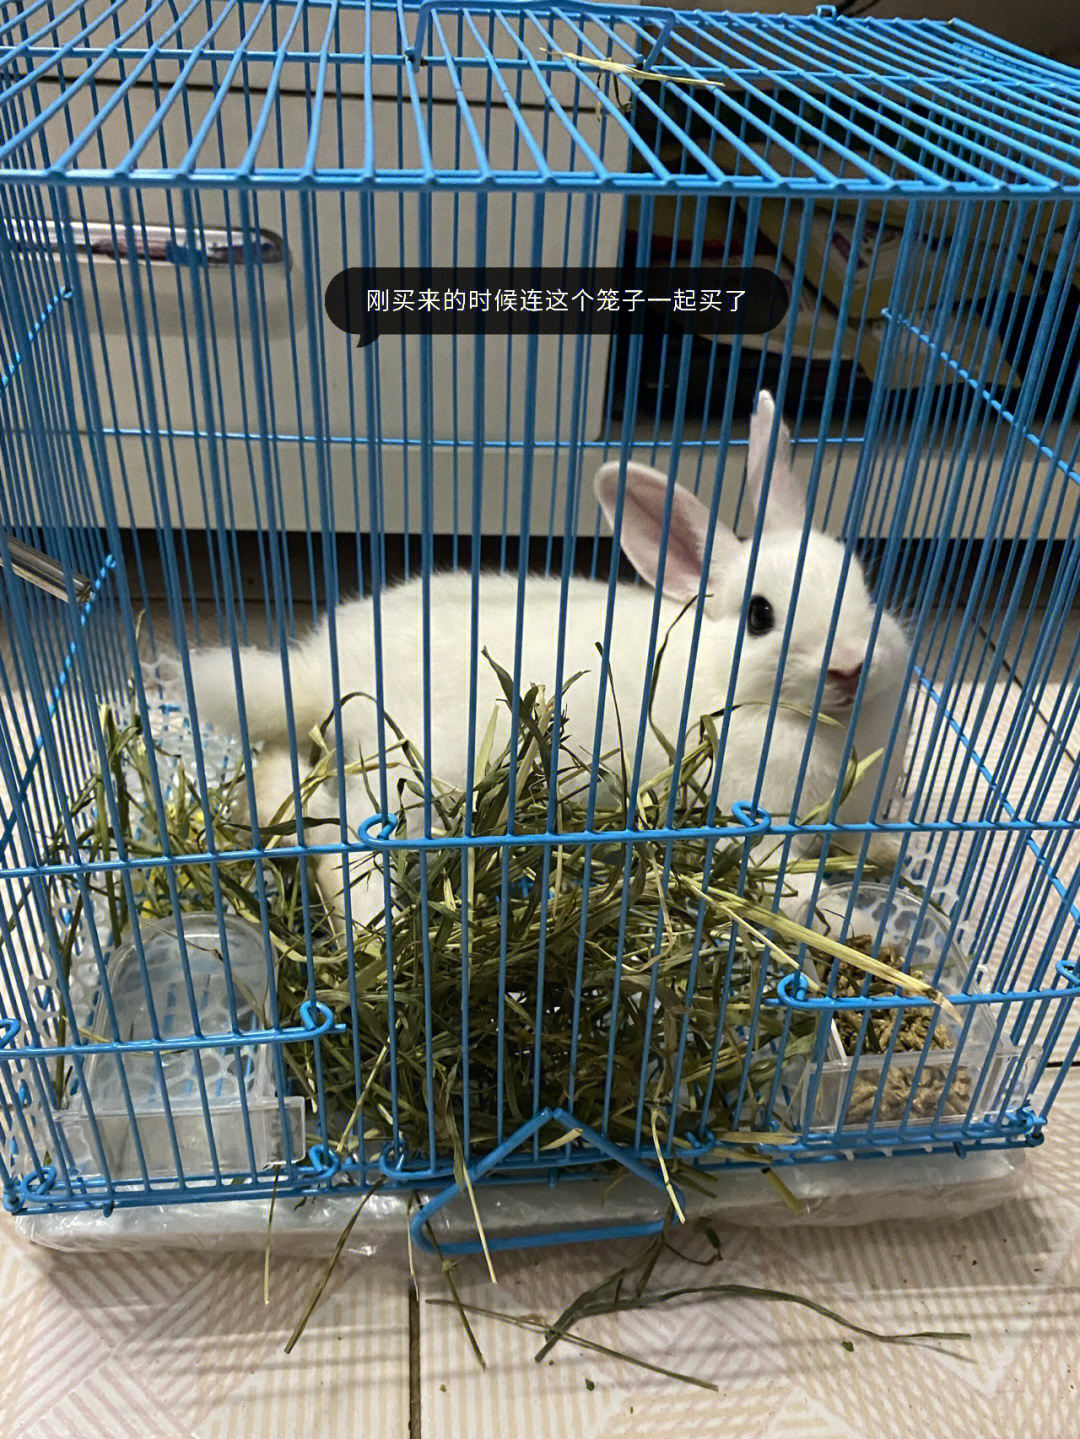 今天看到宿舍一个小姐妹把兔子跟笼子一起扔进了垃圾桶 重要的是活的